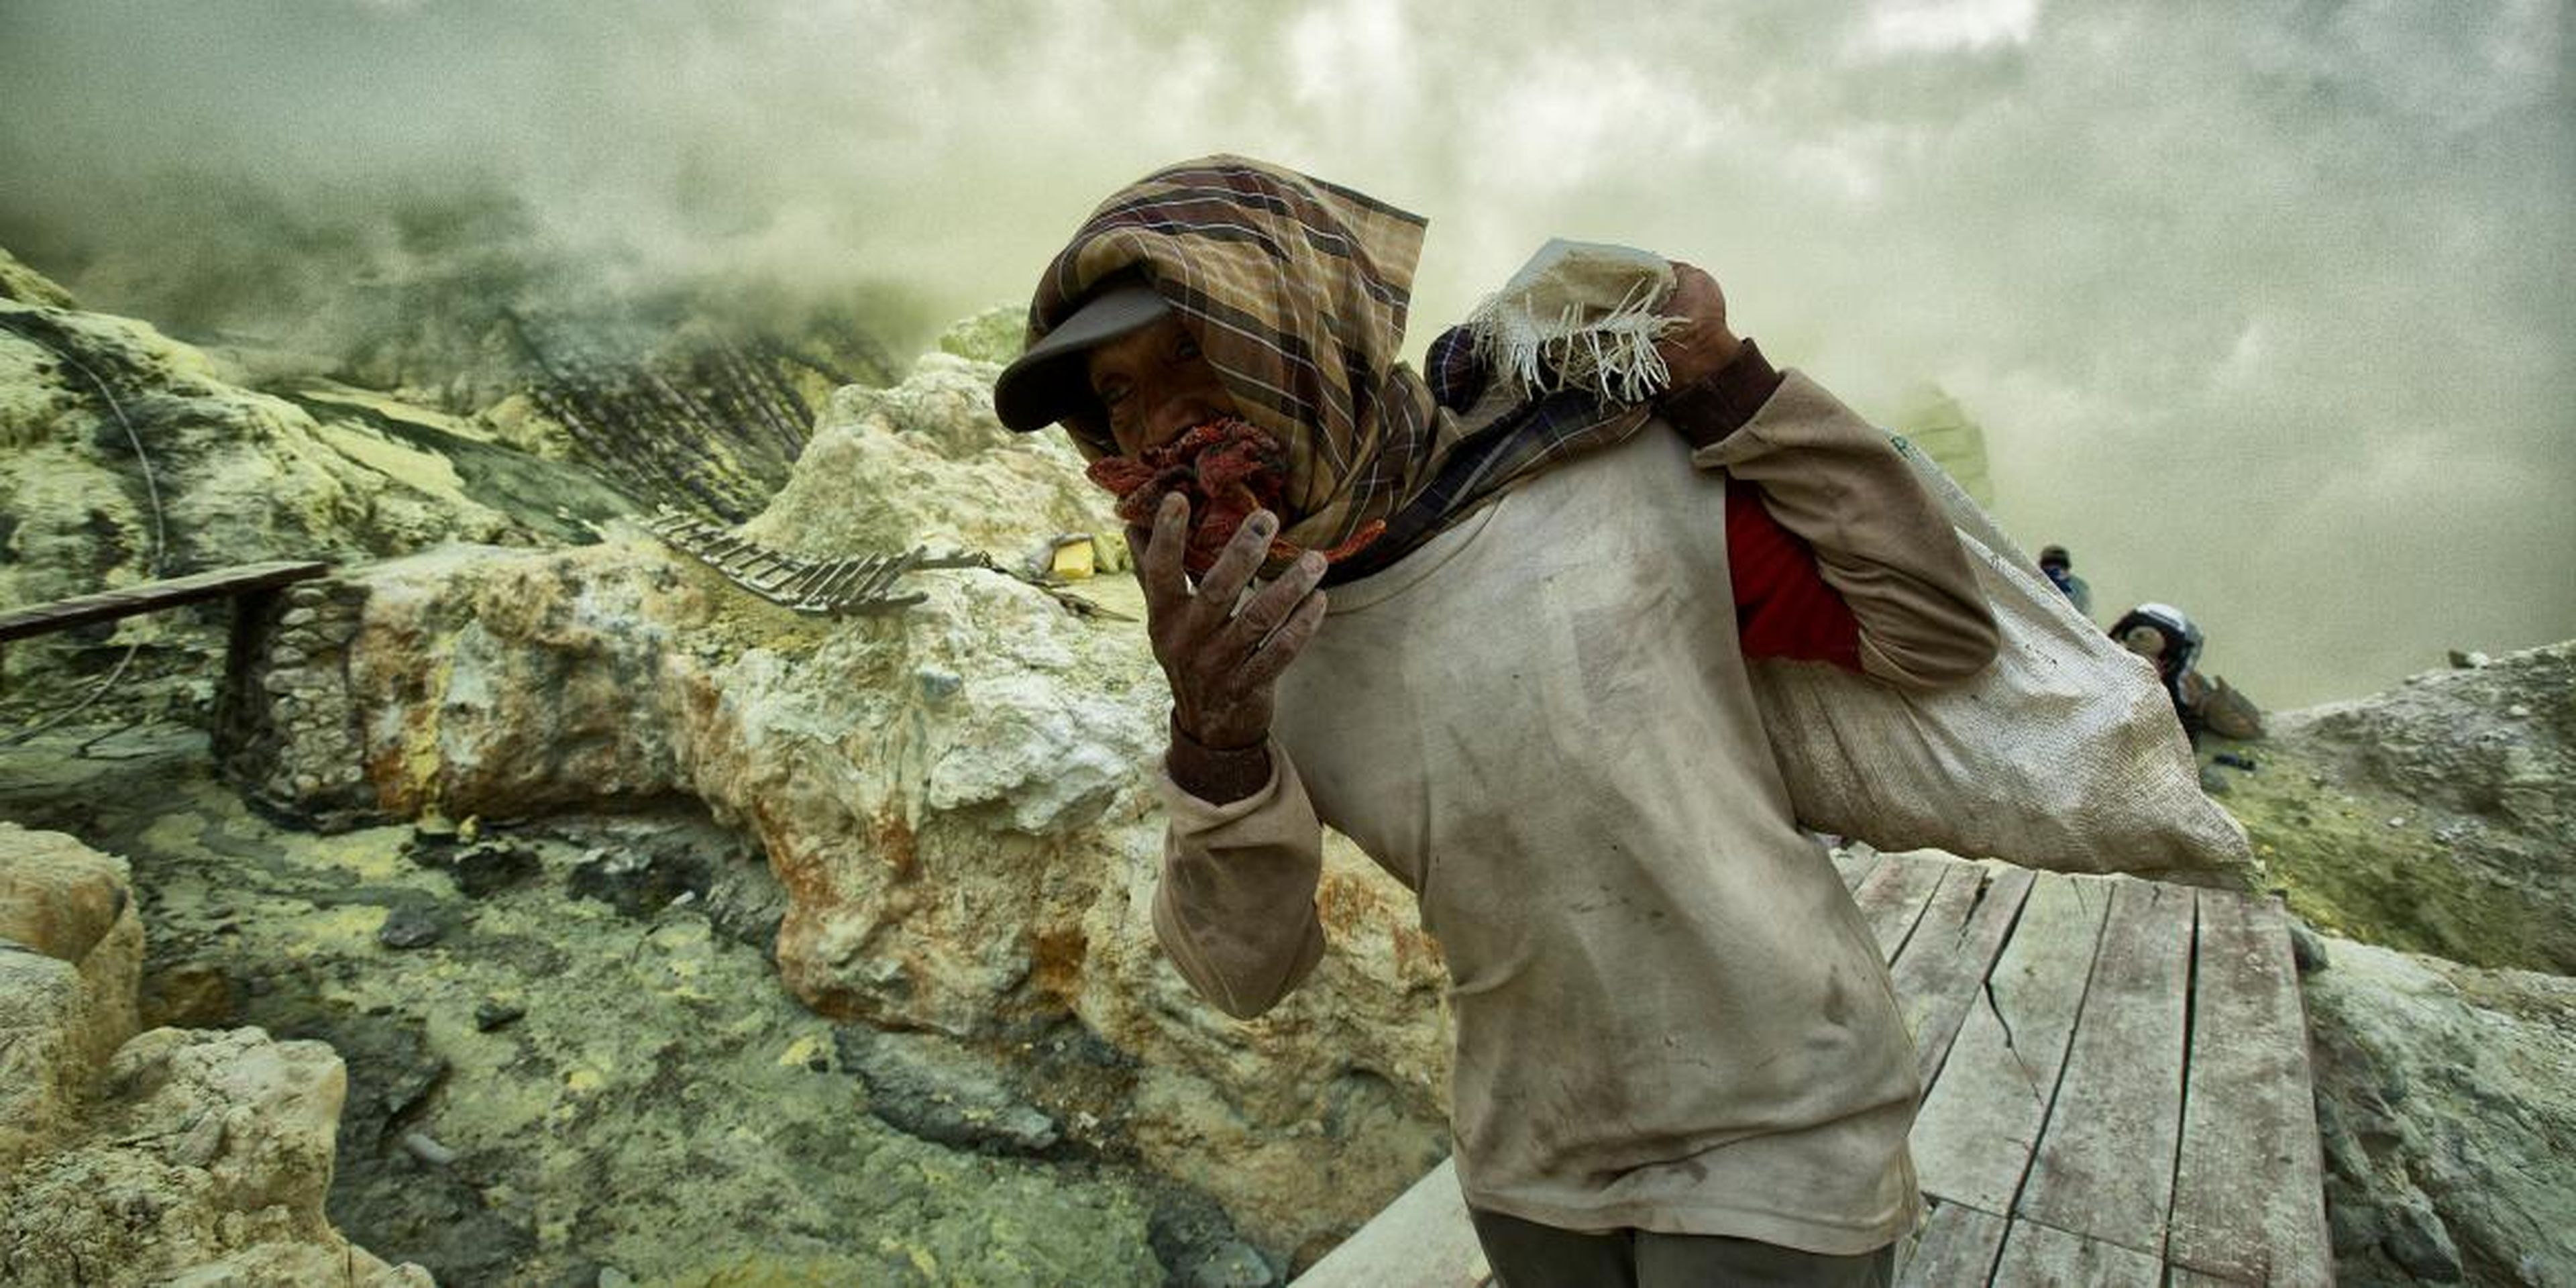 Un minero en las minas de plata de Bolivia, Cerro Rico, donde han muerto millones desde el año 1.500.